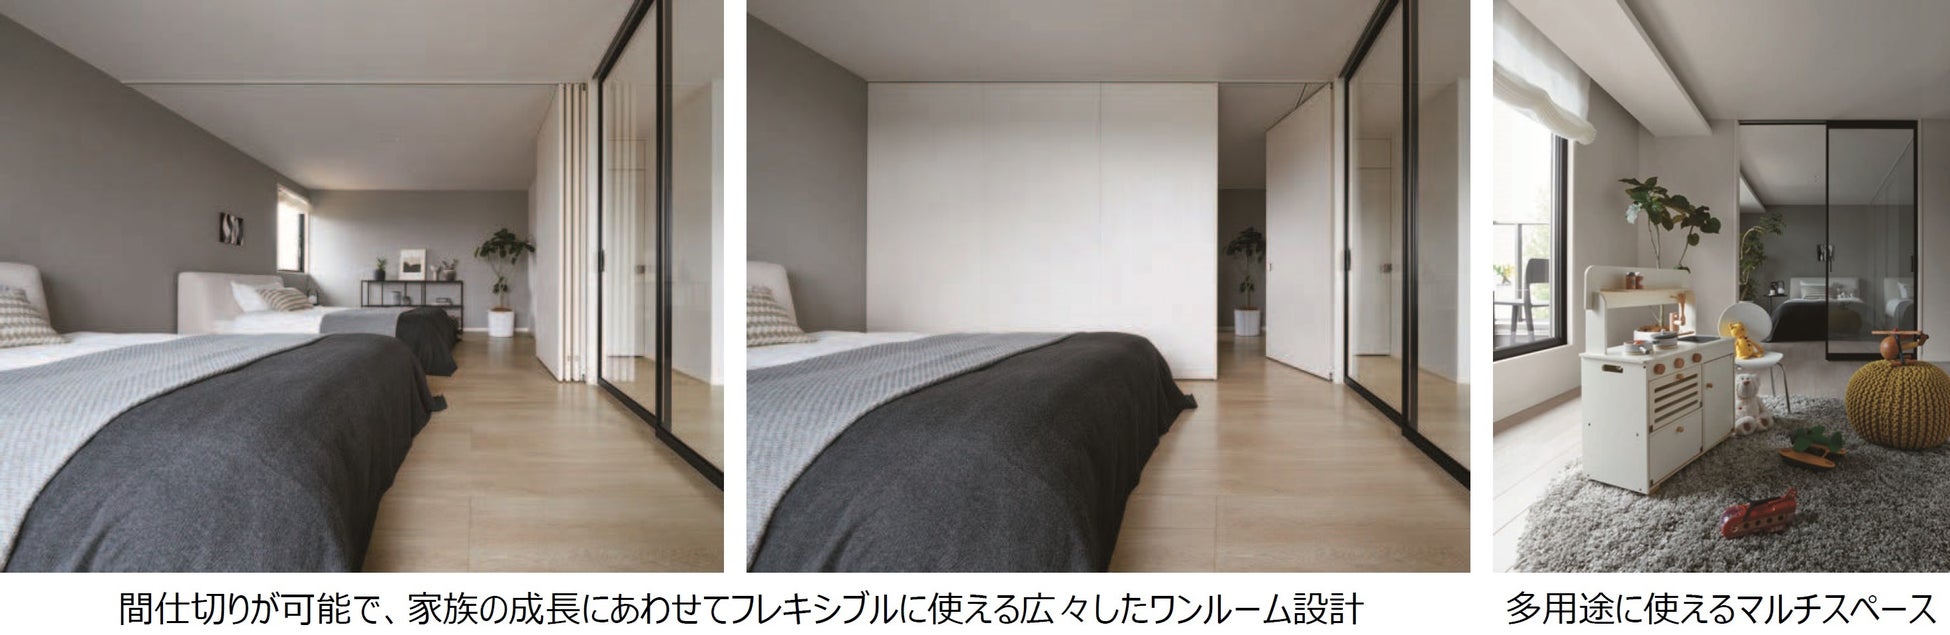 プロの「おすすめ」を満載した、新時代の企画住宅「SMART STYLE Roomie」を新発売のサブ画像4